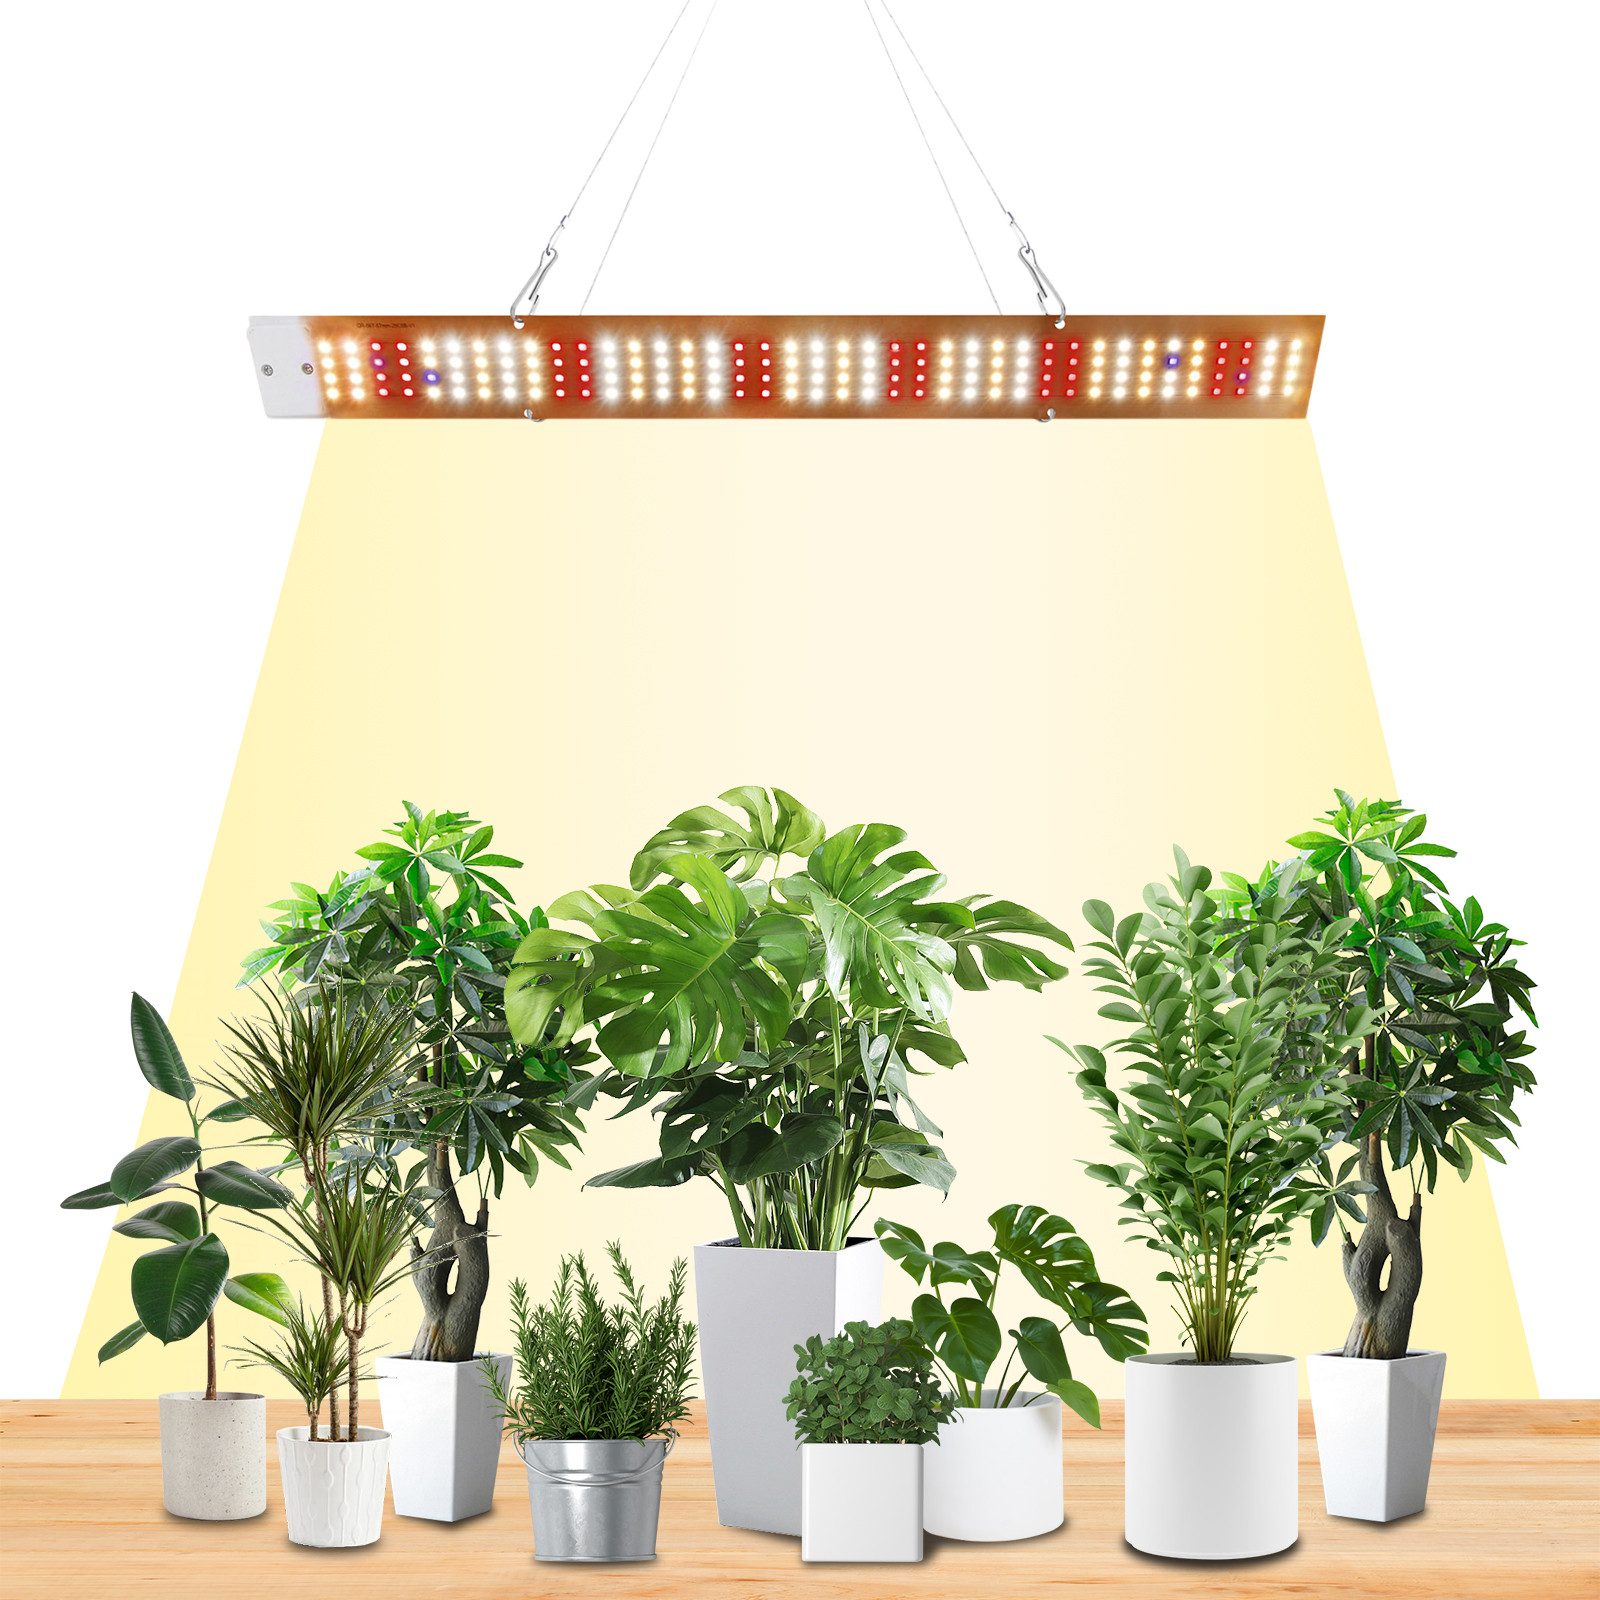 Jibenhome Vollspektrum LED Wachstumslampe Vollspektrum LED Pflanzenlicht,Grow Lampe mit UV,IR für Zimmerpflanzen, 1 St., für hohe Pflanzen, Sämlinge, blühendes Obst, Gemüse